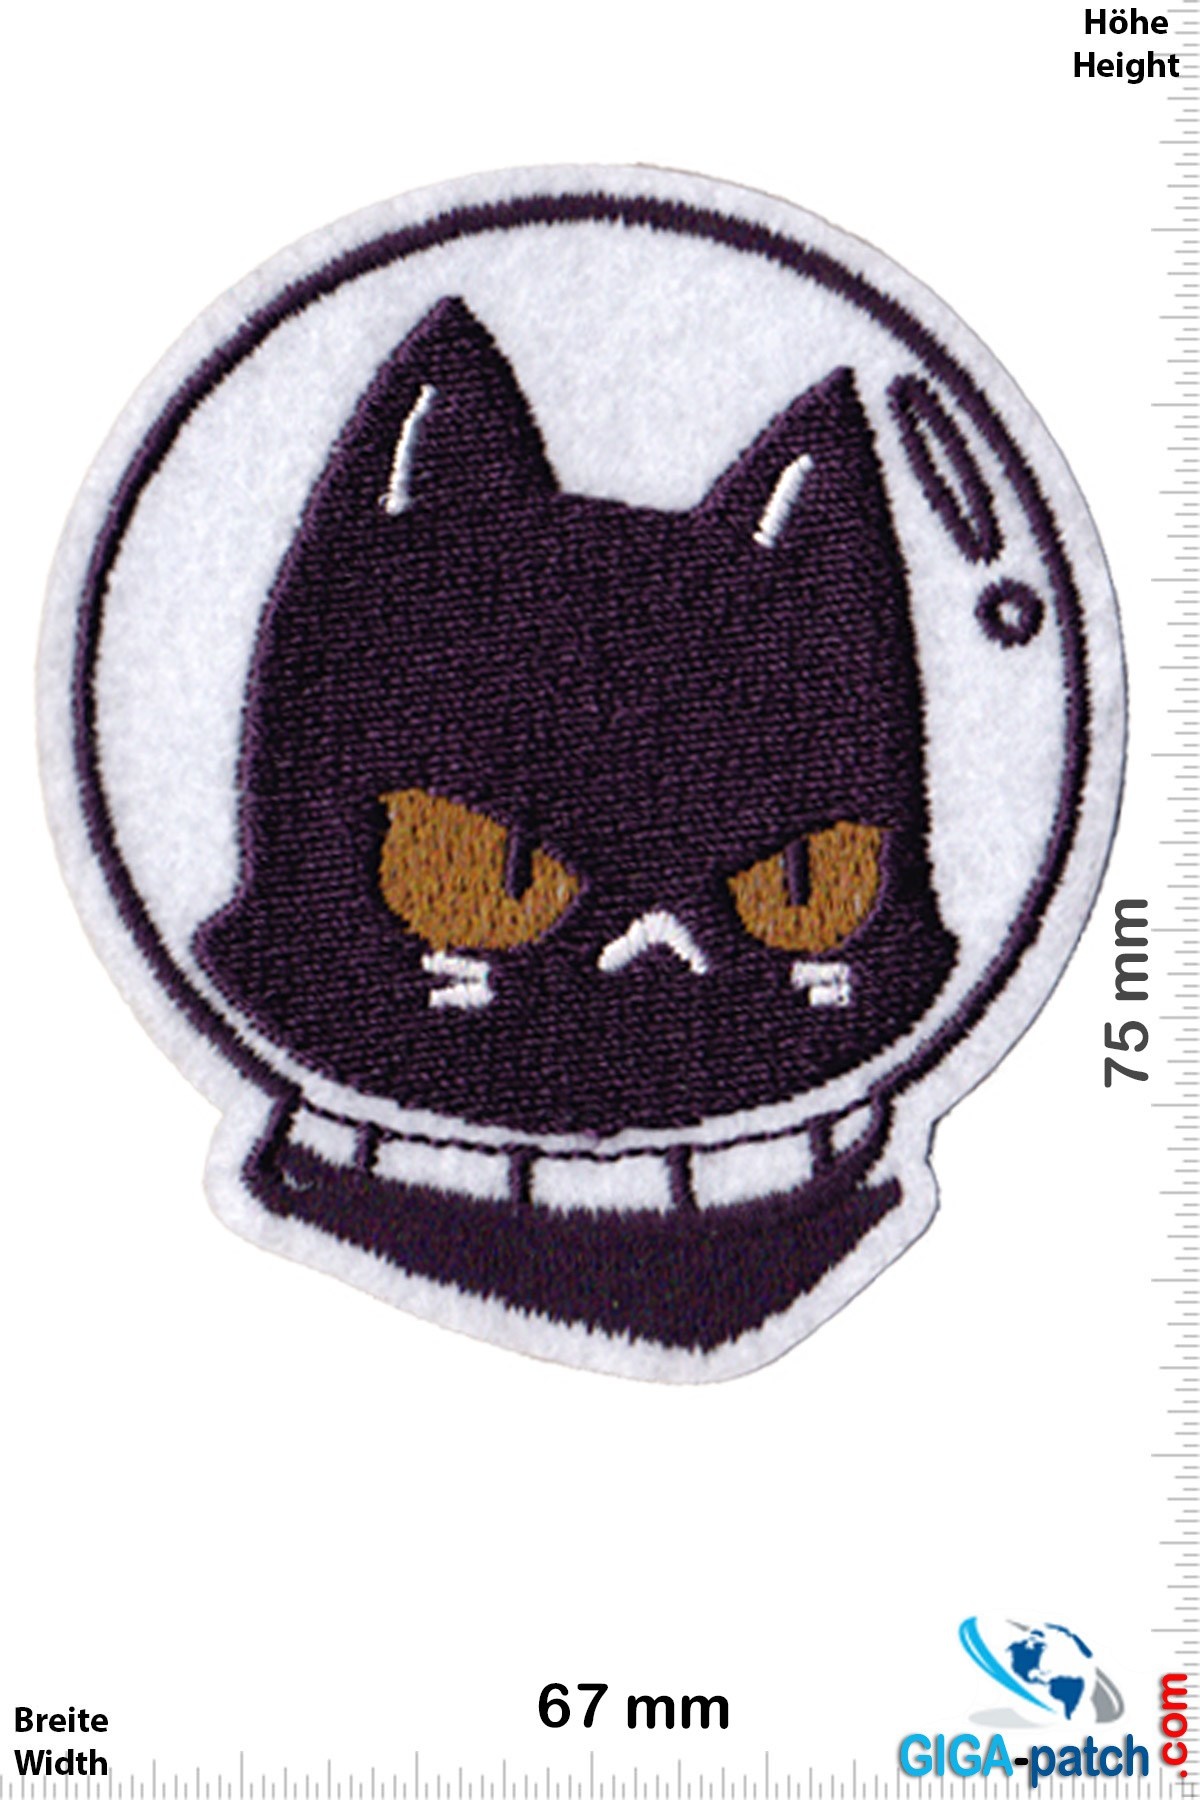 Nasa Space cat - helmet - astronaut